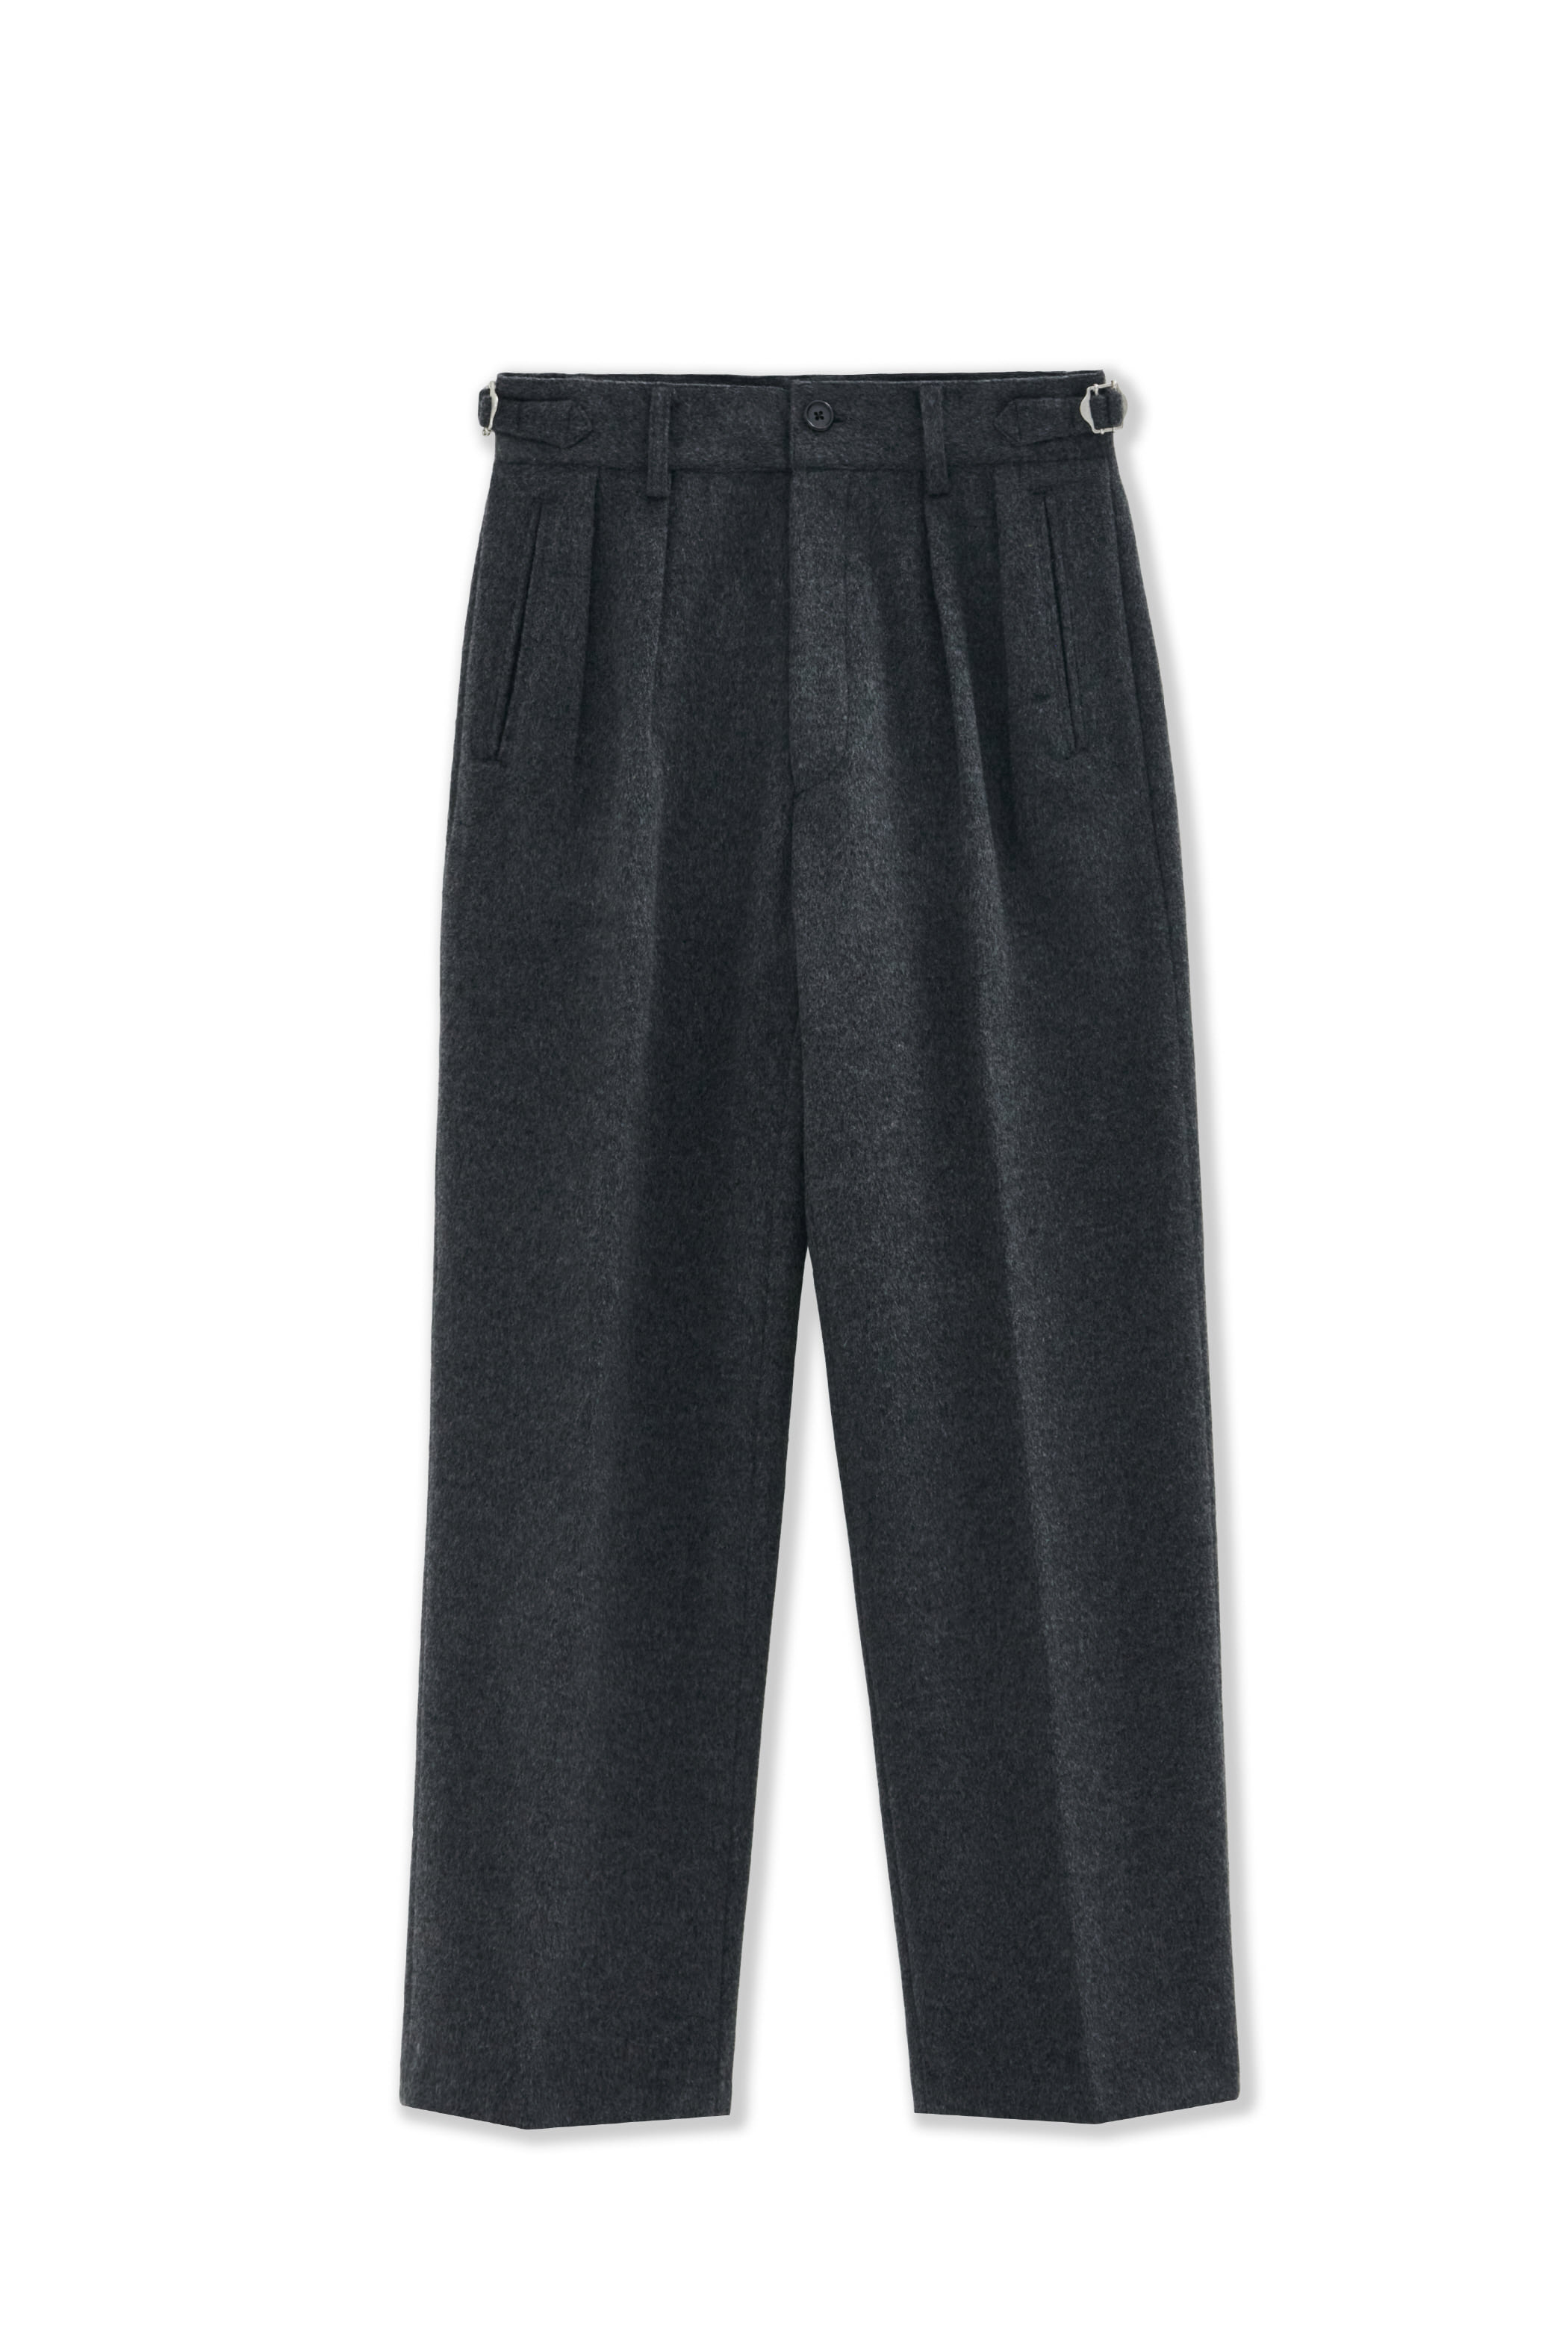 2pleats wide trousers[heavy wool]_charcoal